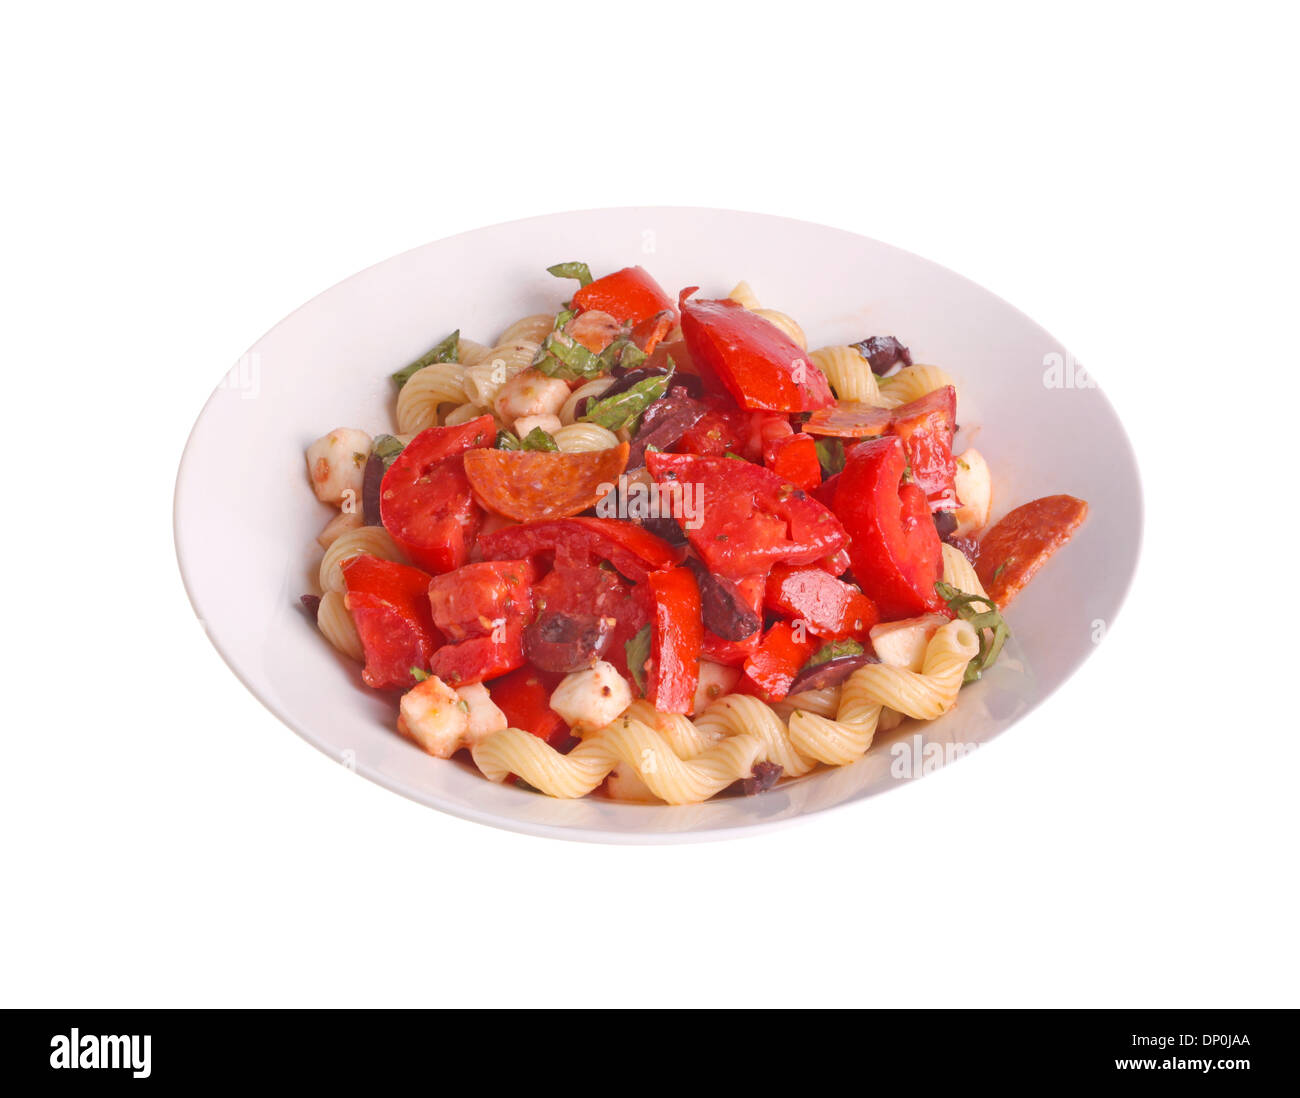 Assiette de home-made, froid ou salade de pâtes cavatappi cellentani (pasta fredda) avec le basilic et les tomates Banque D'Images